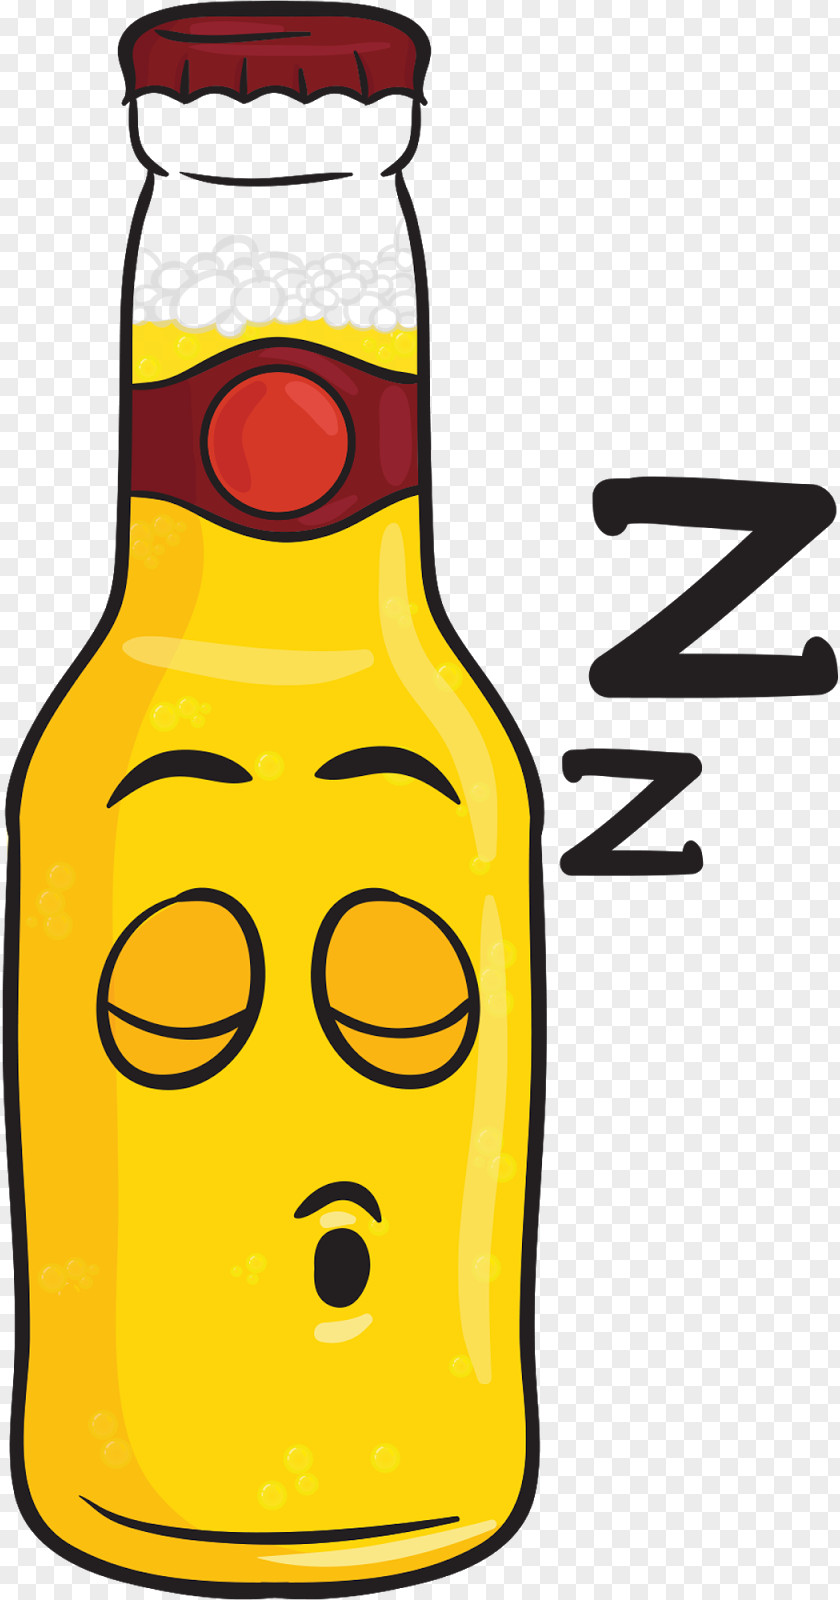 Snoring Beer Bottle Malt Liquor Drink Emoji PNG